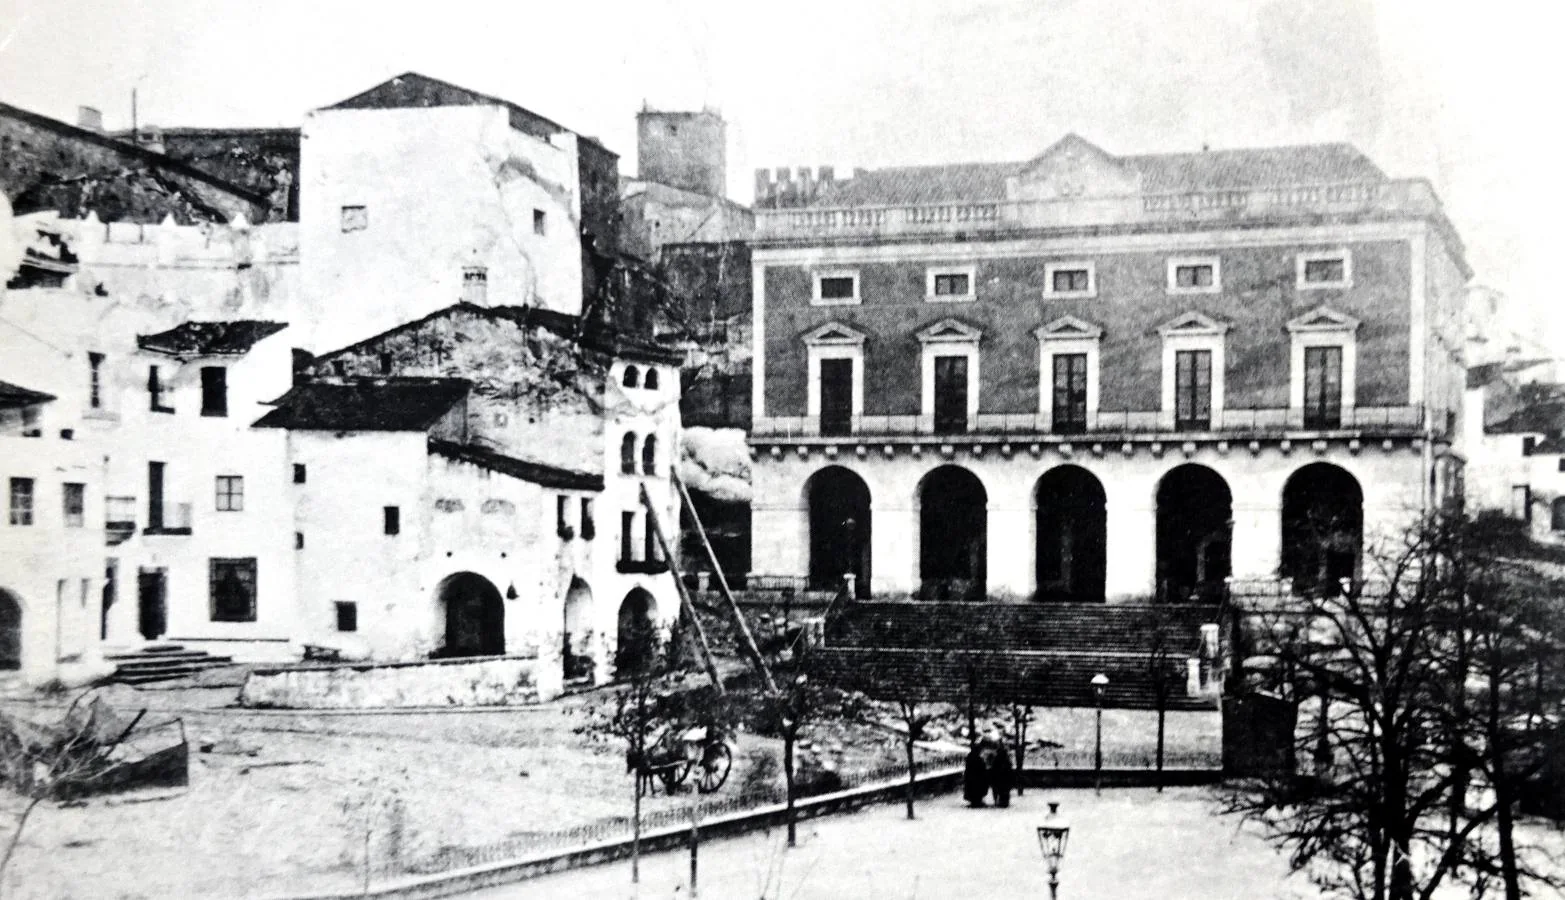 1-Año 1865. Fotografía de Laurent de la Plaza Mayor de Cáceres con casas rodeando la Torre de la Yerba. Casas que fueron tiradas.